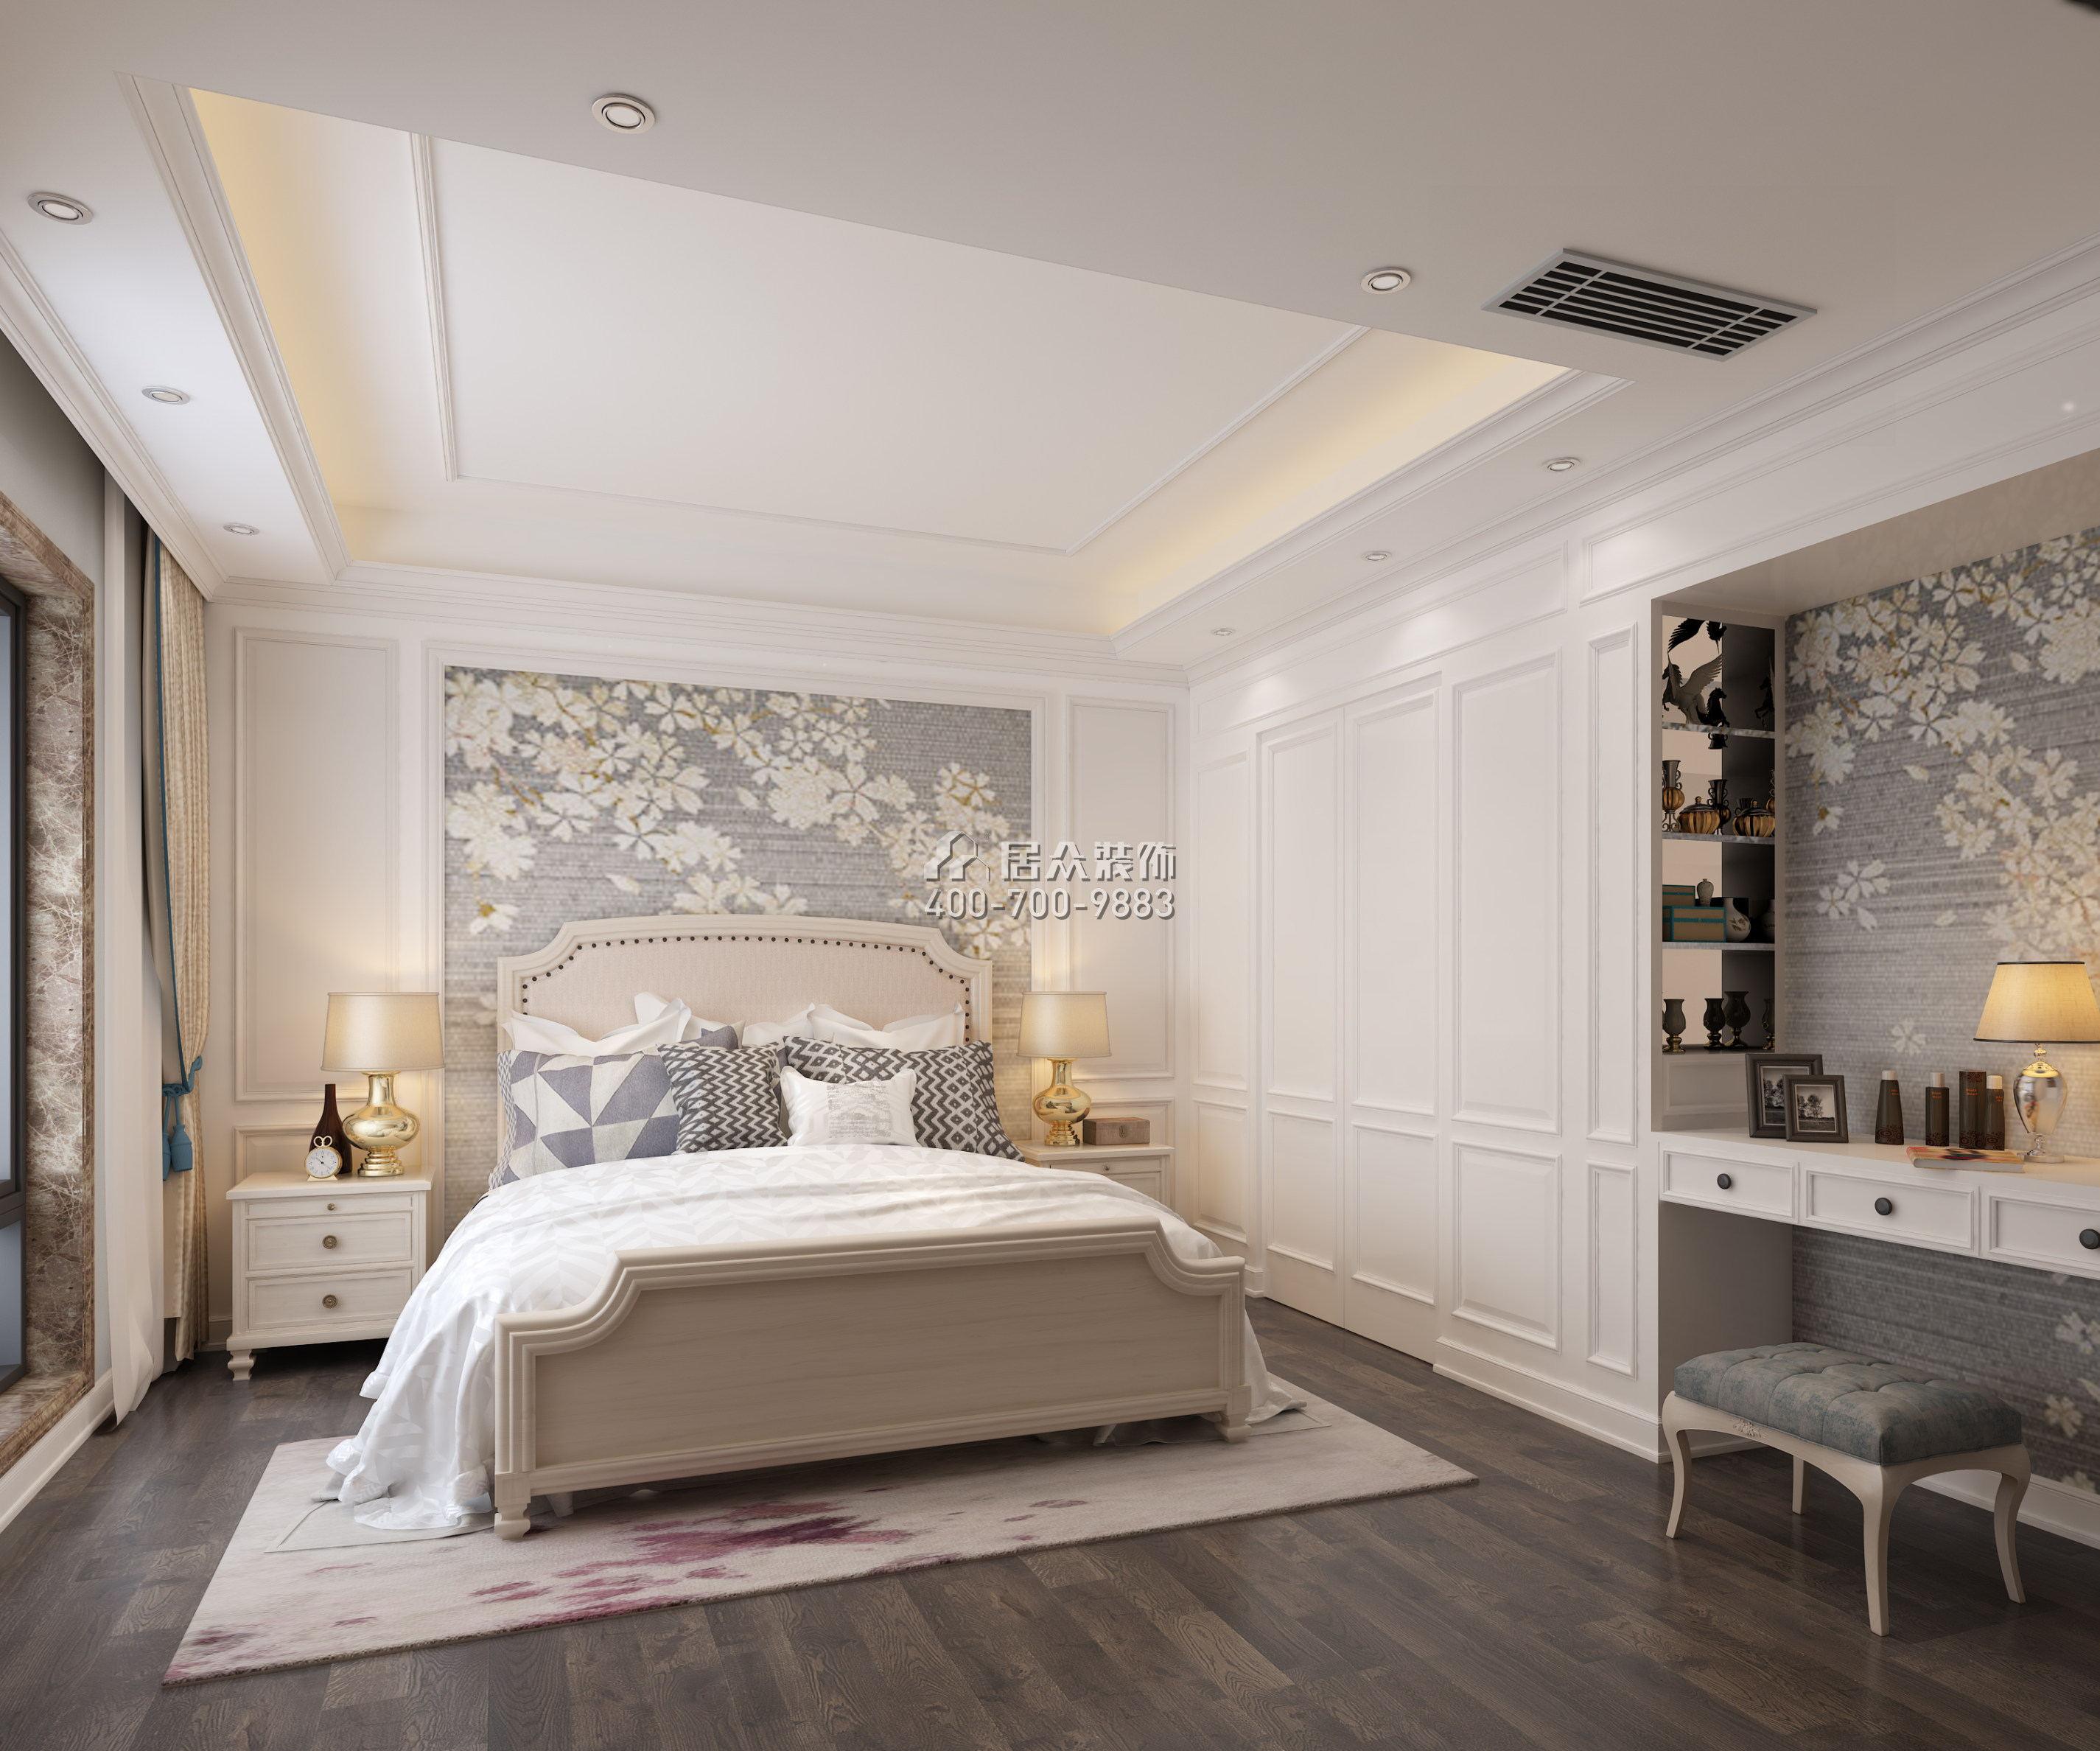 蘭江山第一期190平方米歐式風格平層戶型臥室裝修效果圖